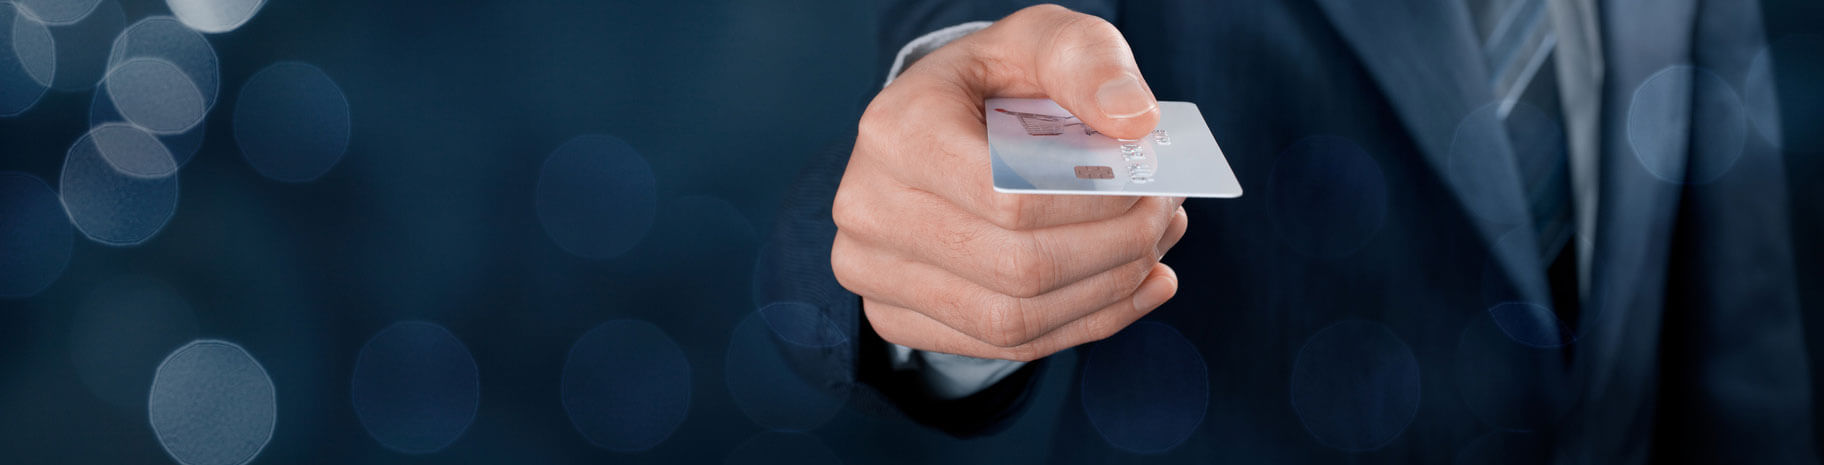 Mit VISA kontaktlos bezahlen » Kontaktlos mit Kreditkarte zahlen!